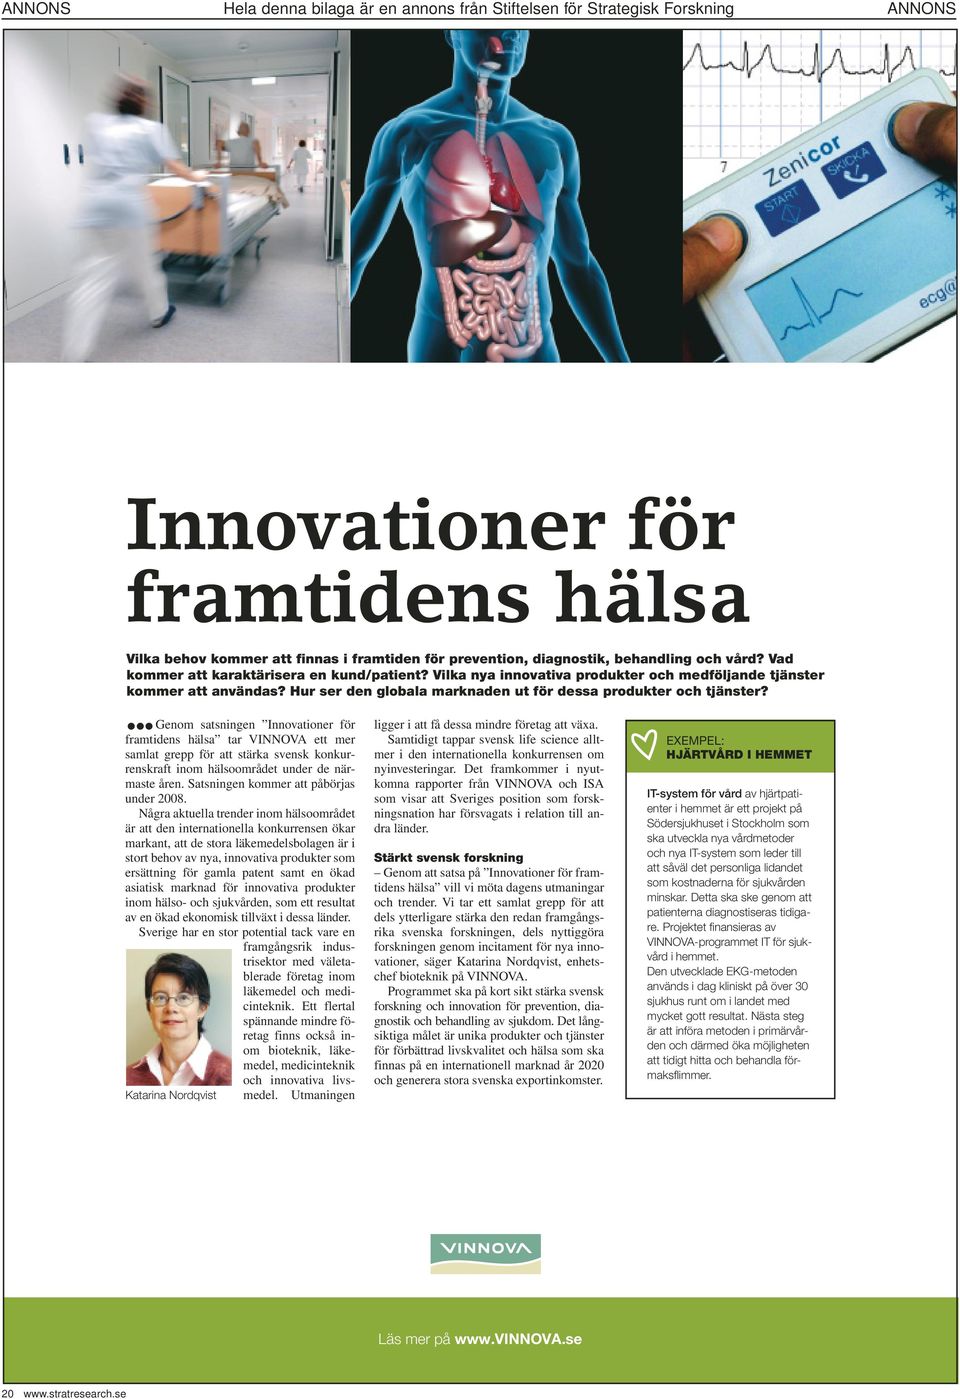 Genom satsningen Innovationer för framtidens hälsa tar VINNOVA ett mer samlat grepp för att stärka svensk konkurrenskraft inom hälsoområdet under de närmaste åren.